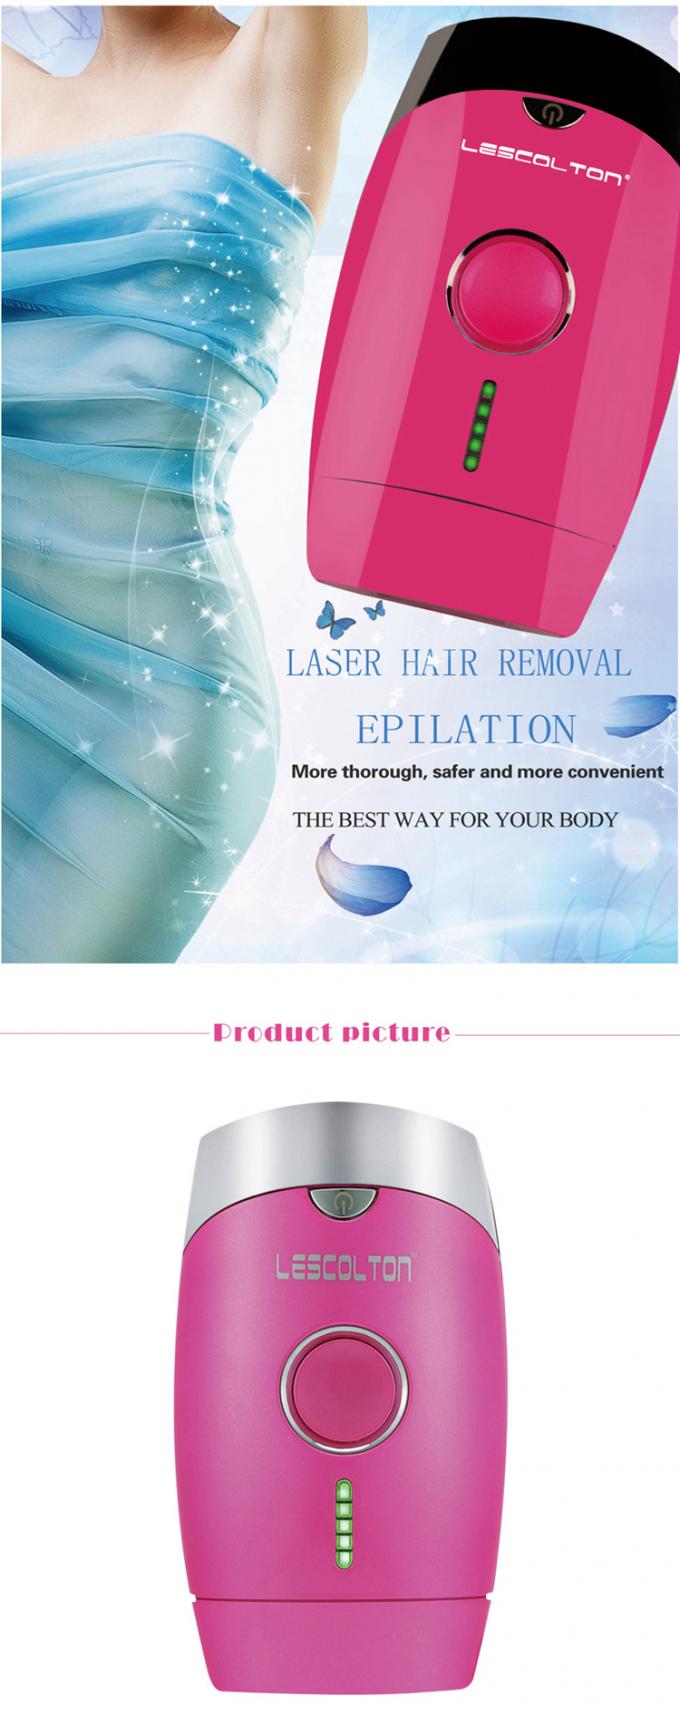 De Machine van de het Haarverwijdering van de Lescoltont002 Laser voor Huisgebruik